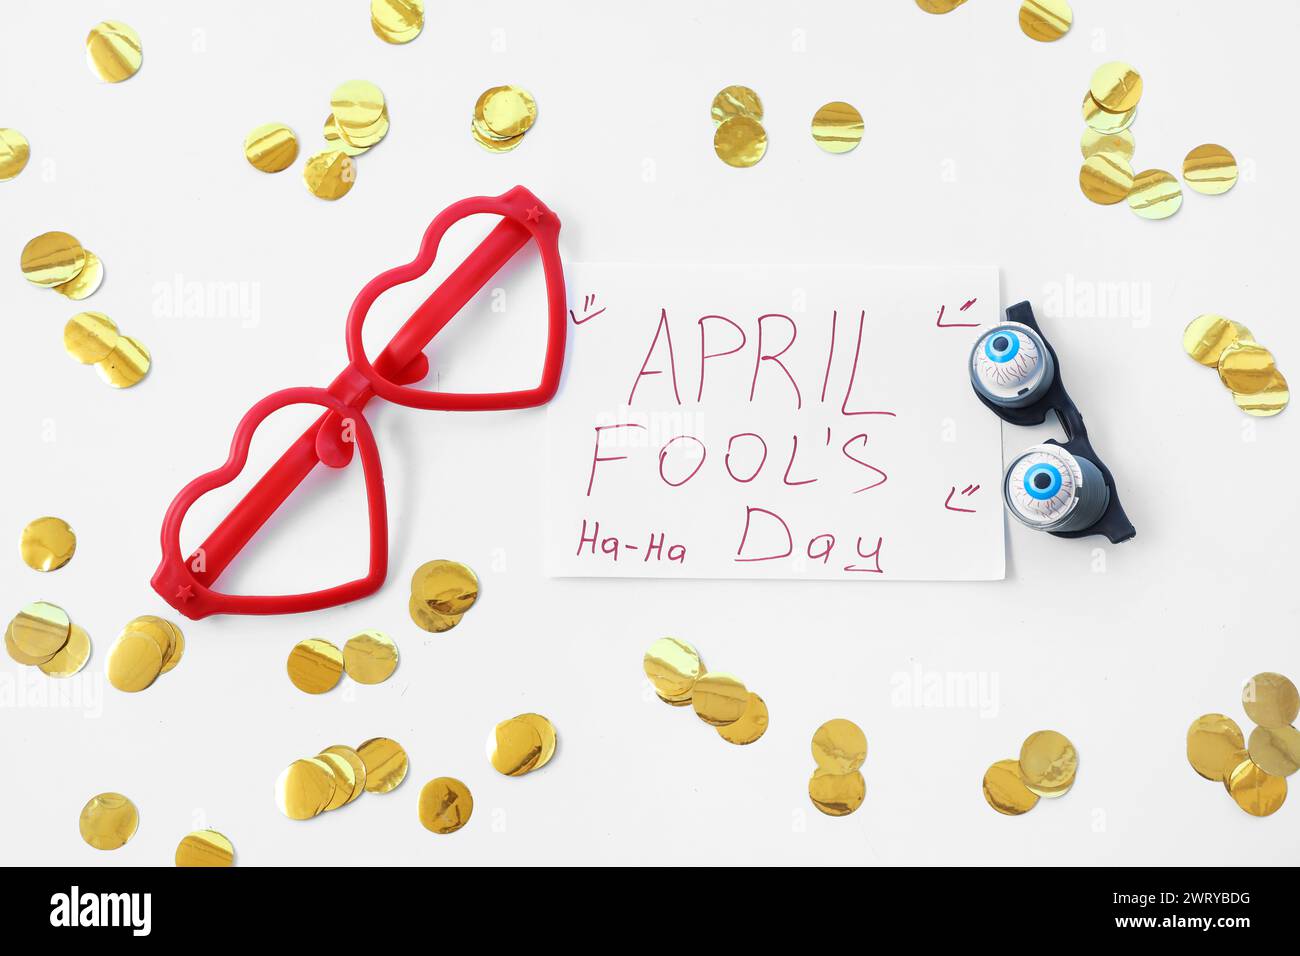 Affiche avec texte APRIL FOOL'S DAY et lunettes de fantaisie sur fond blanc Banque D'Images